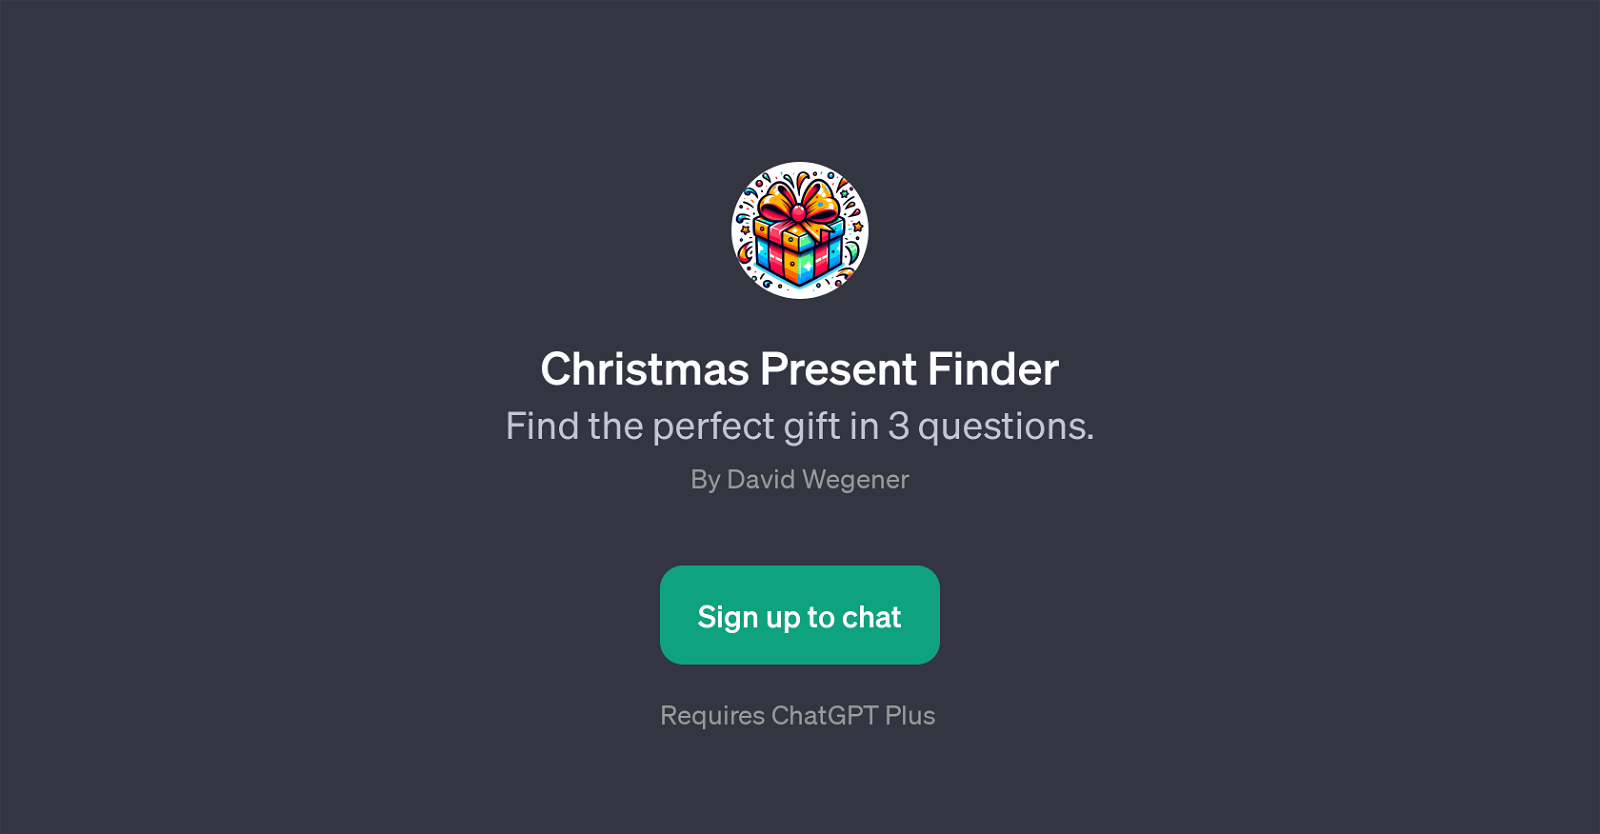 Christmas Present Finder website